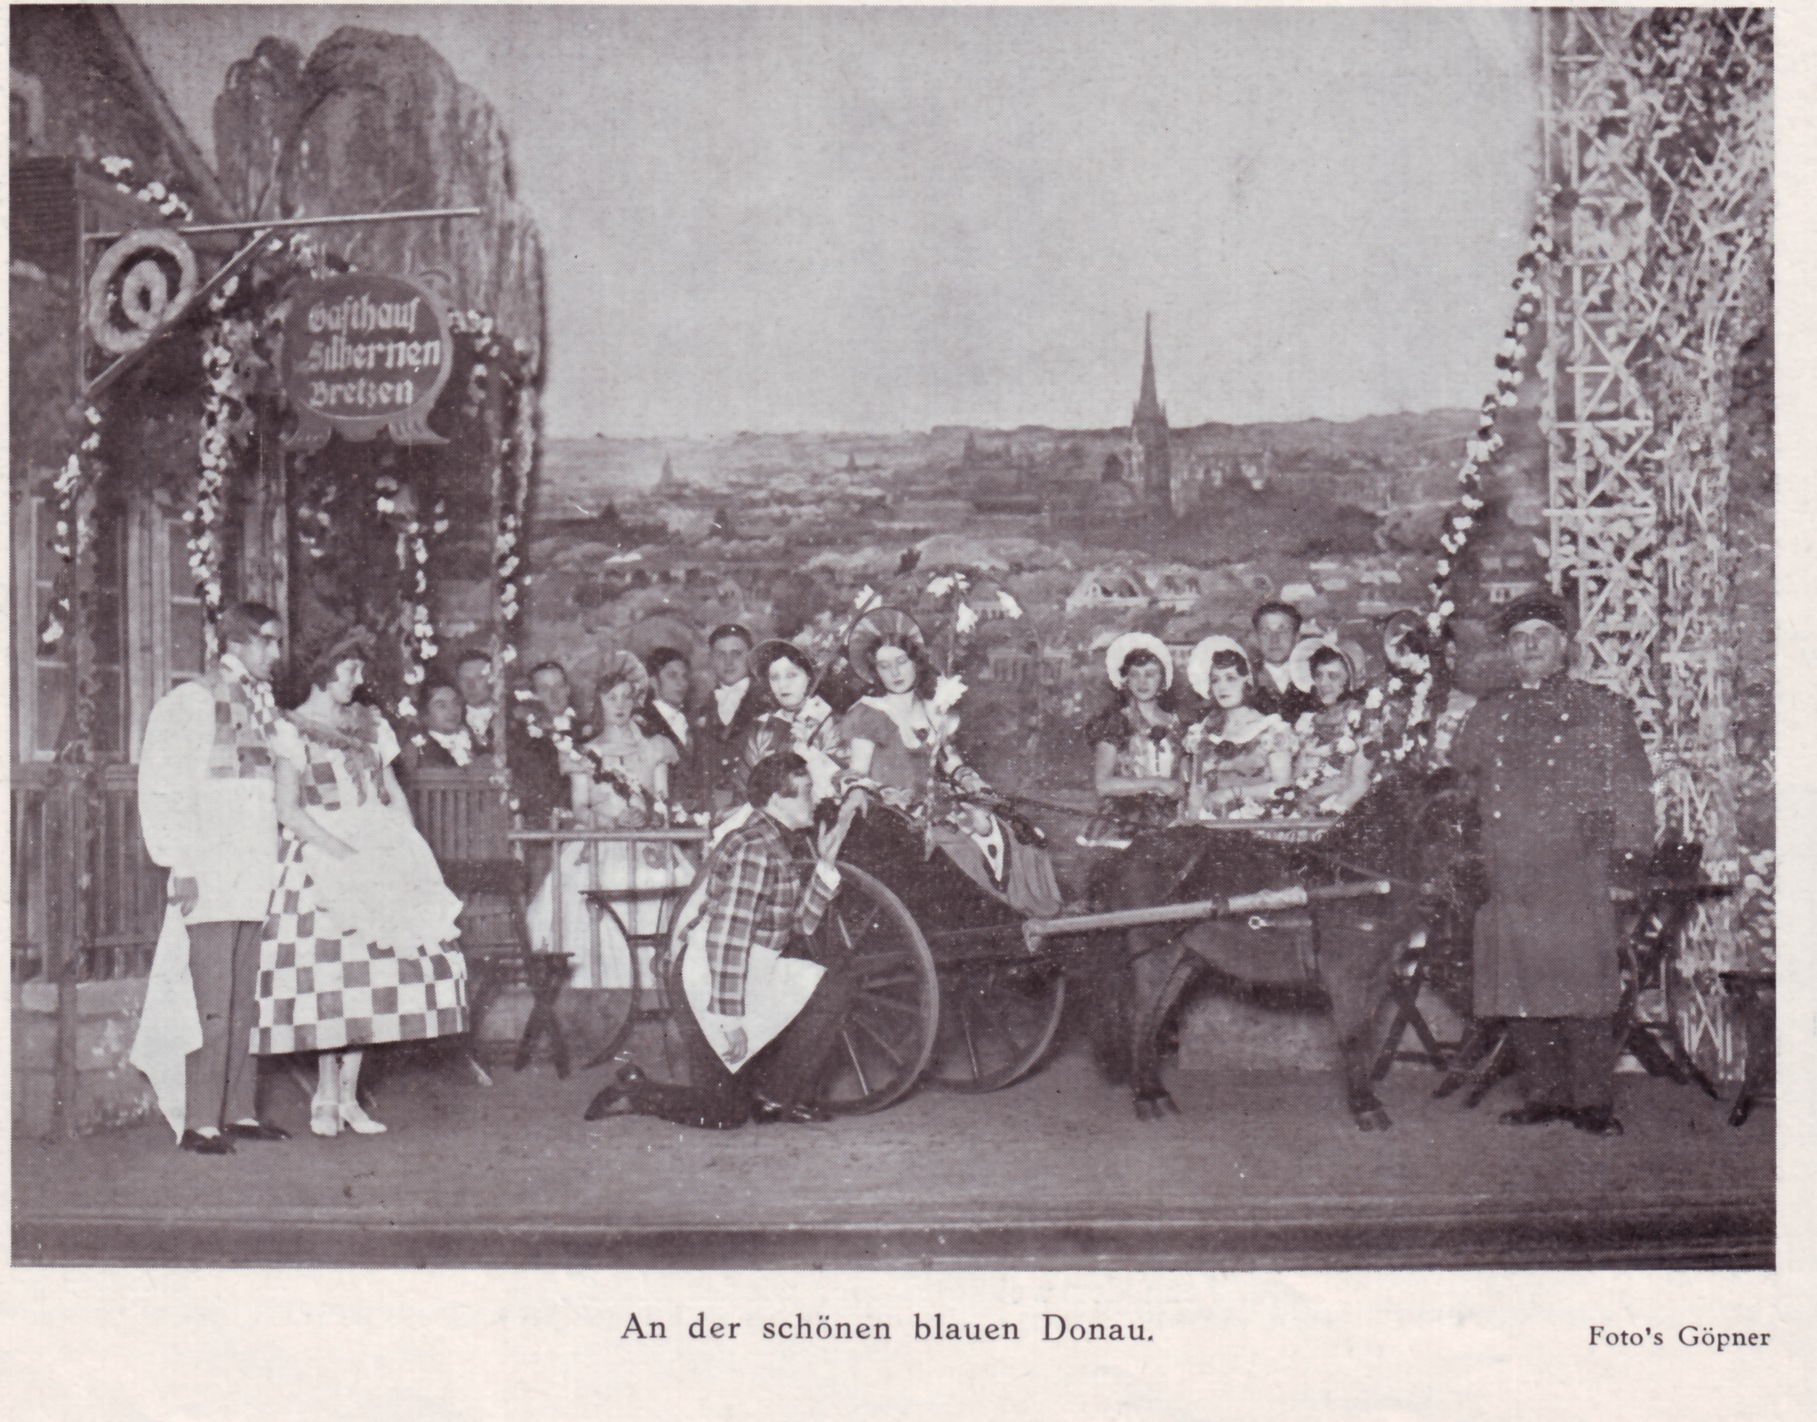 Scene from the Fritz Hirsch production Fritz Hirsch "An der schönen blauen Donau" in the 1930s.